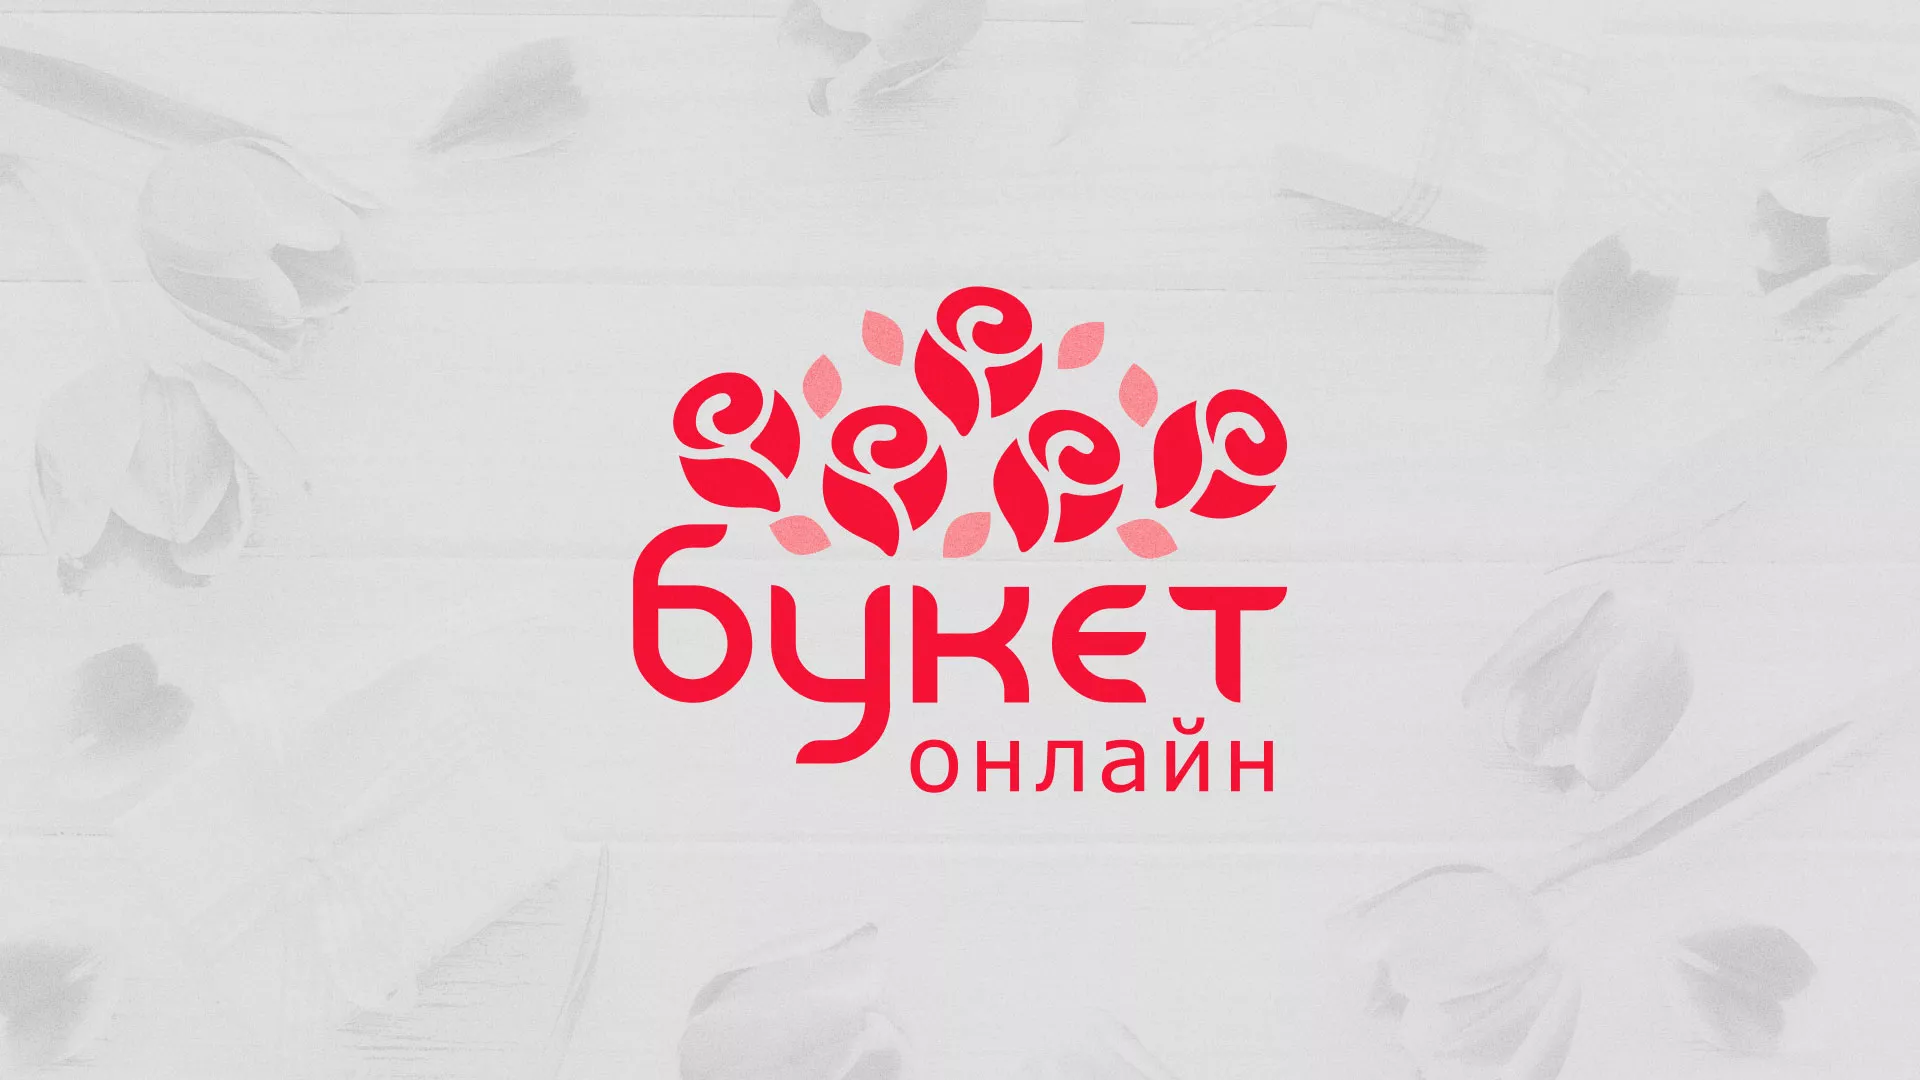 Создание интернет-магазина «Букет-онлайн» по цветам в Могоче